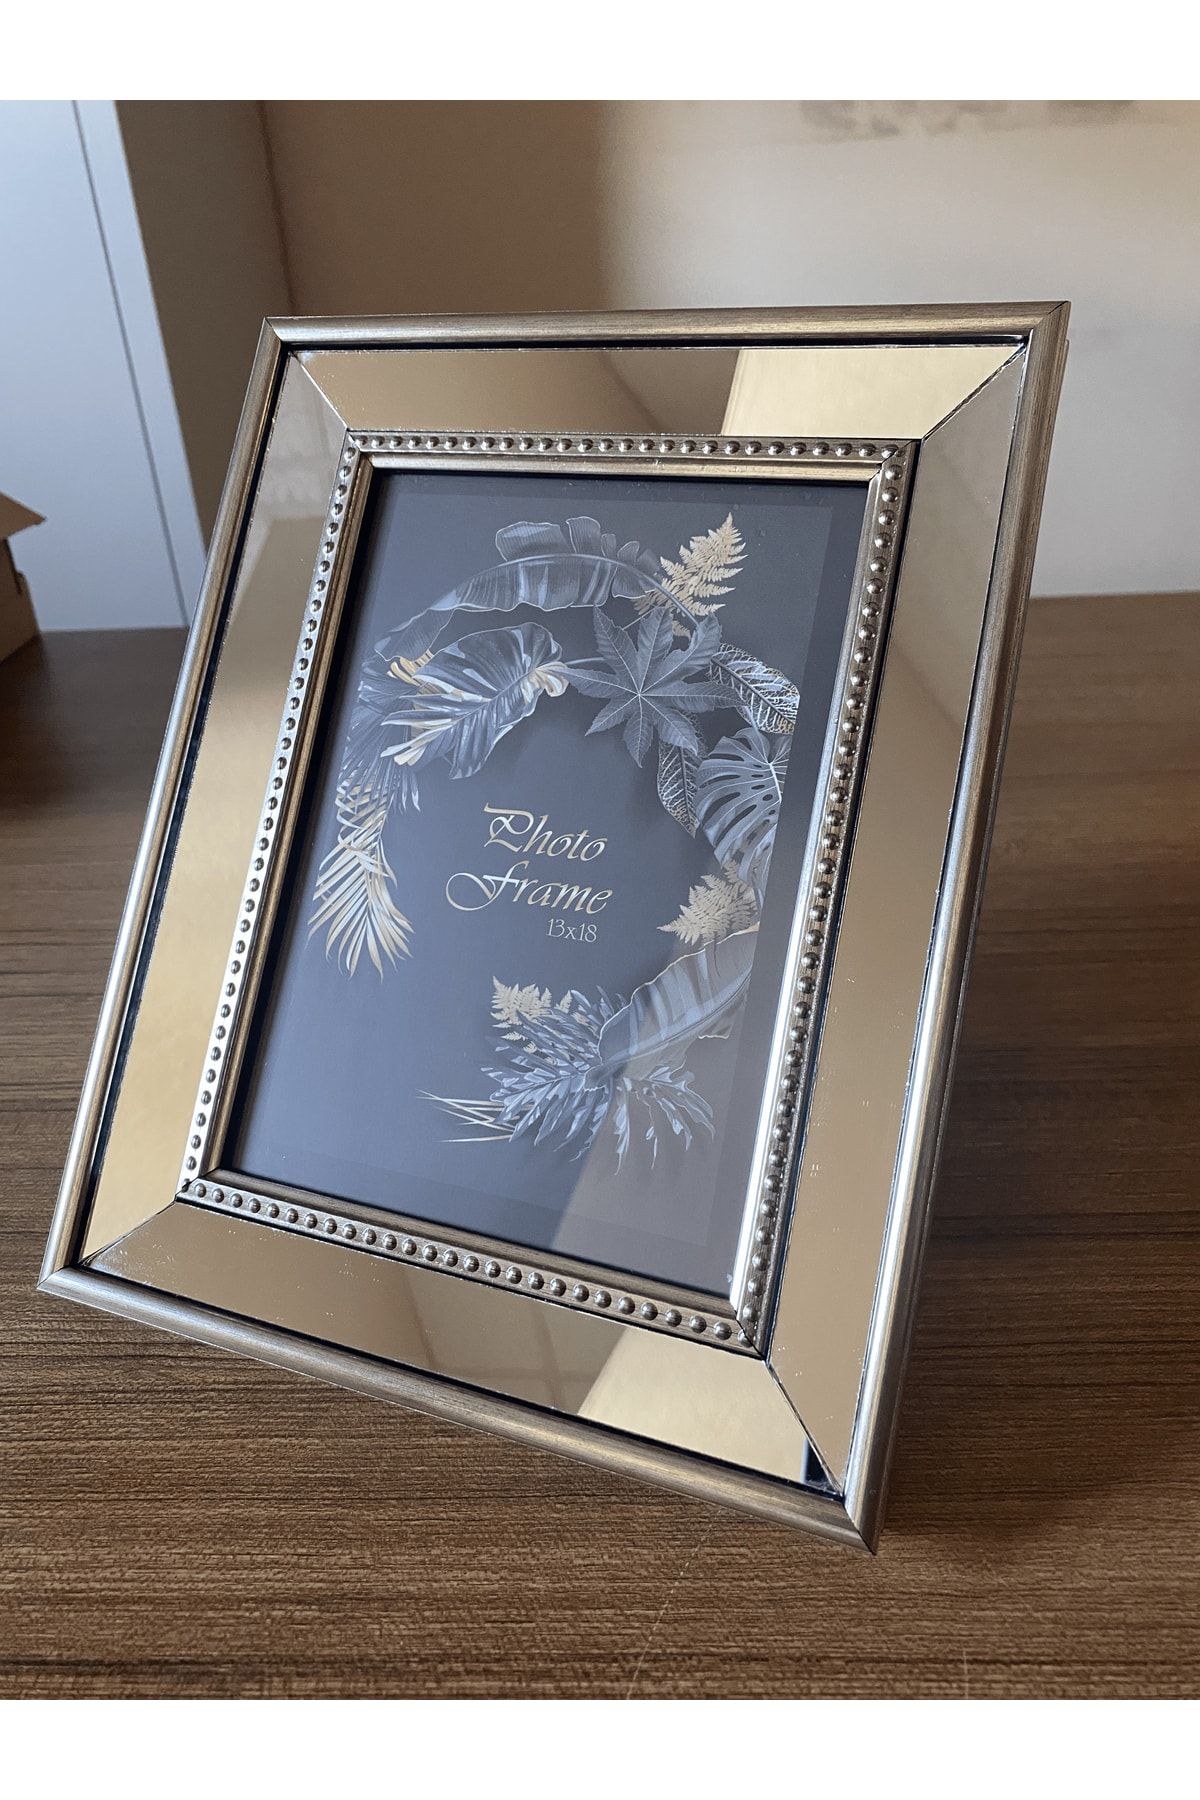 BELLARTE Aynalı Çerçeve, Gümüş Aynalı Fotoğraf Çerçevesi, Cam Çerçeve 13x18cm